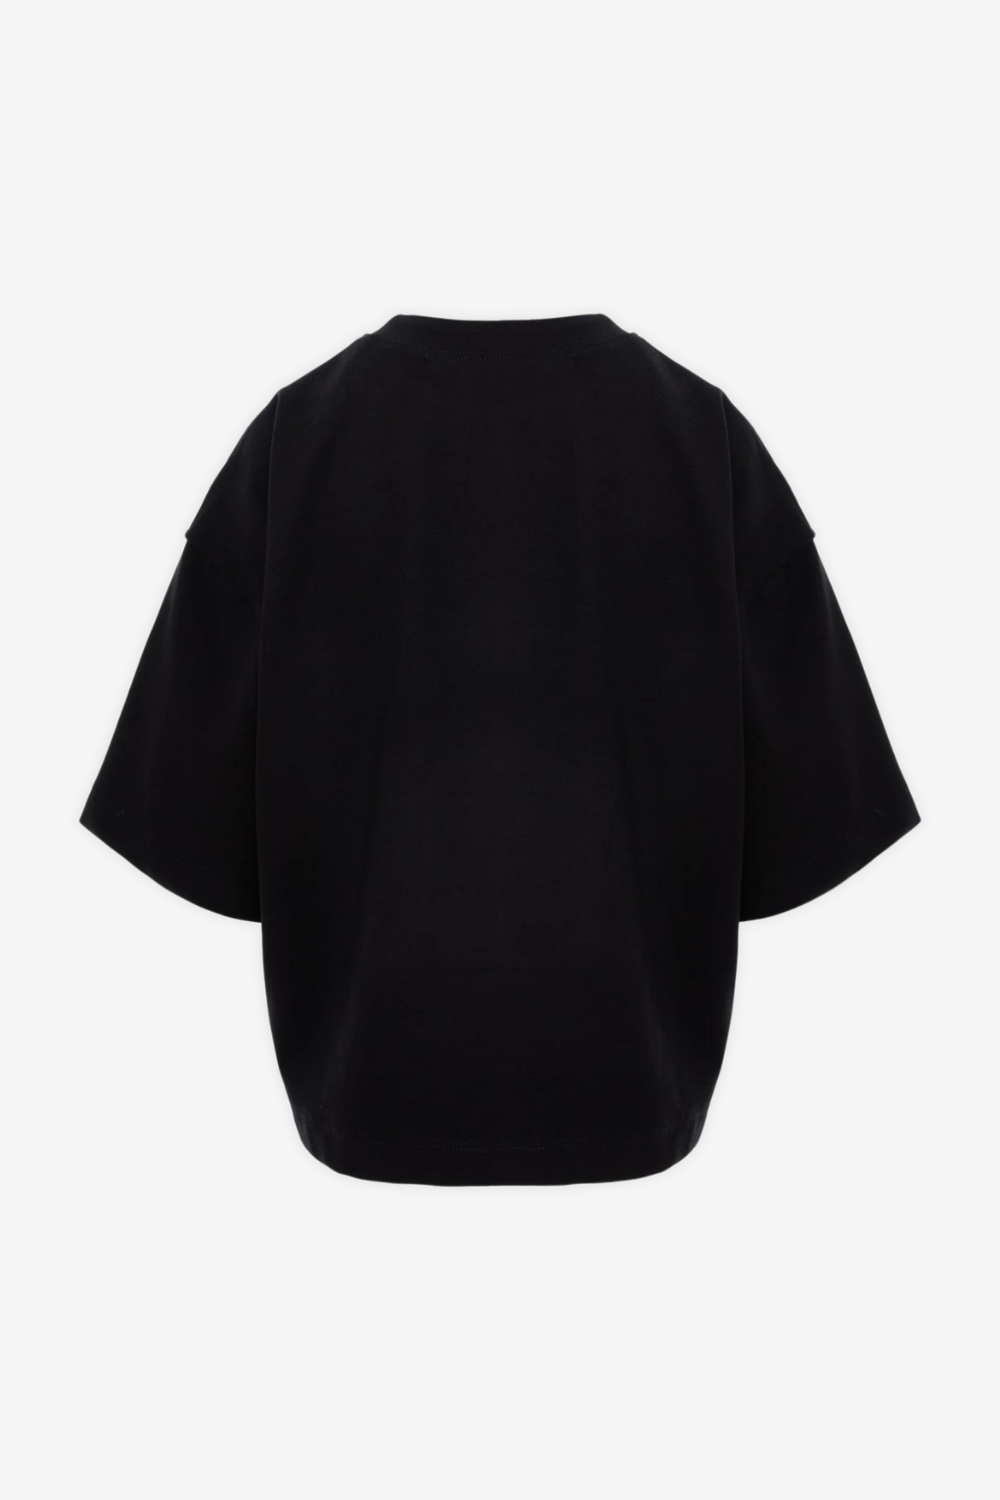 Tricou damă, negru, imprimeu Pochette, viscoză premium, croială oversized, detalii elegante (mâneci conice).